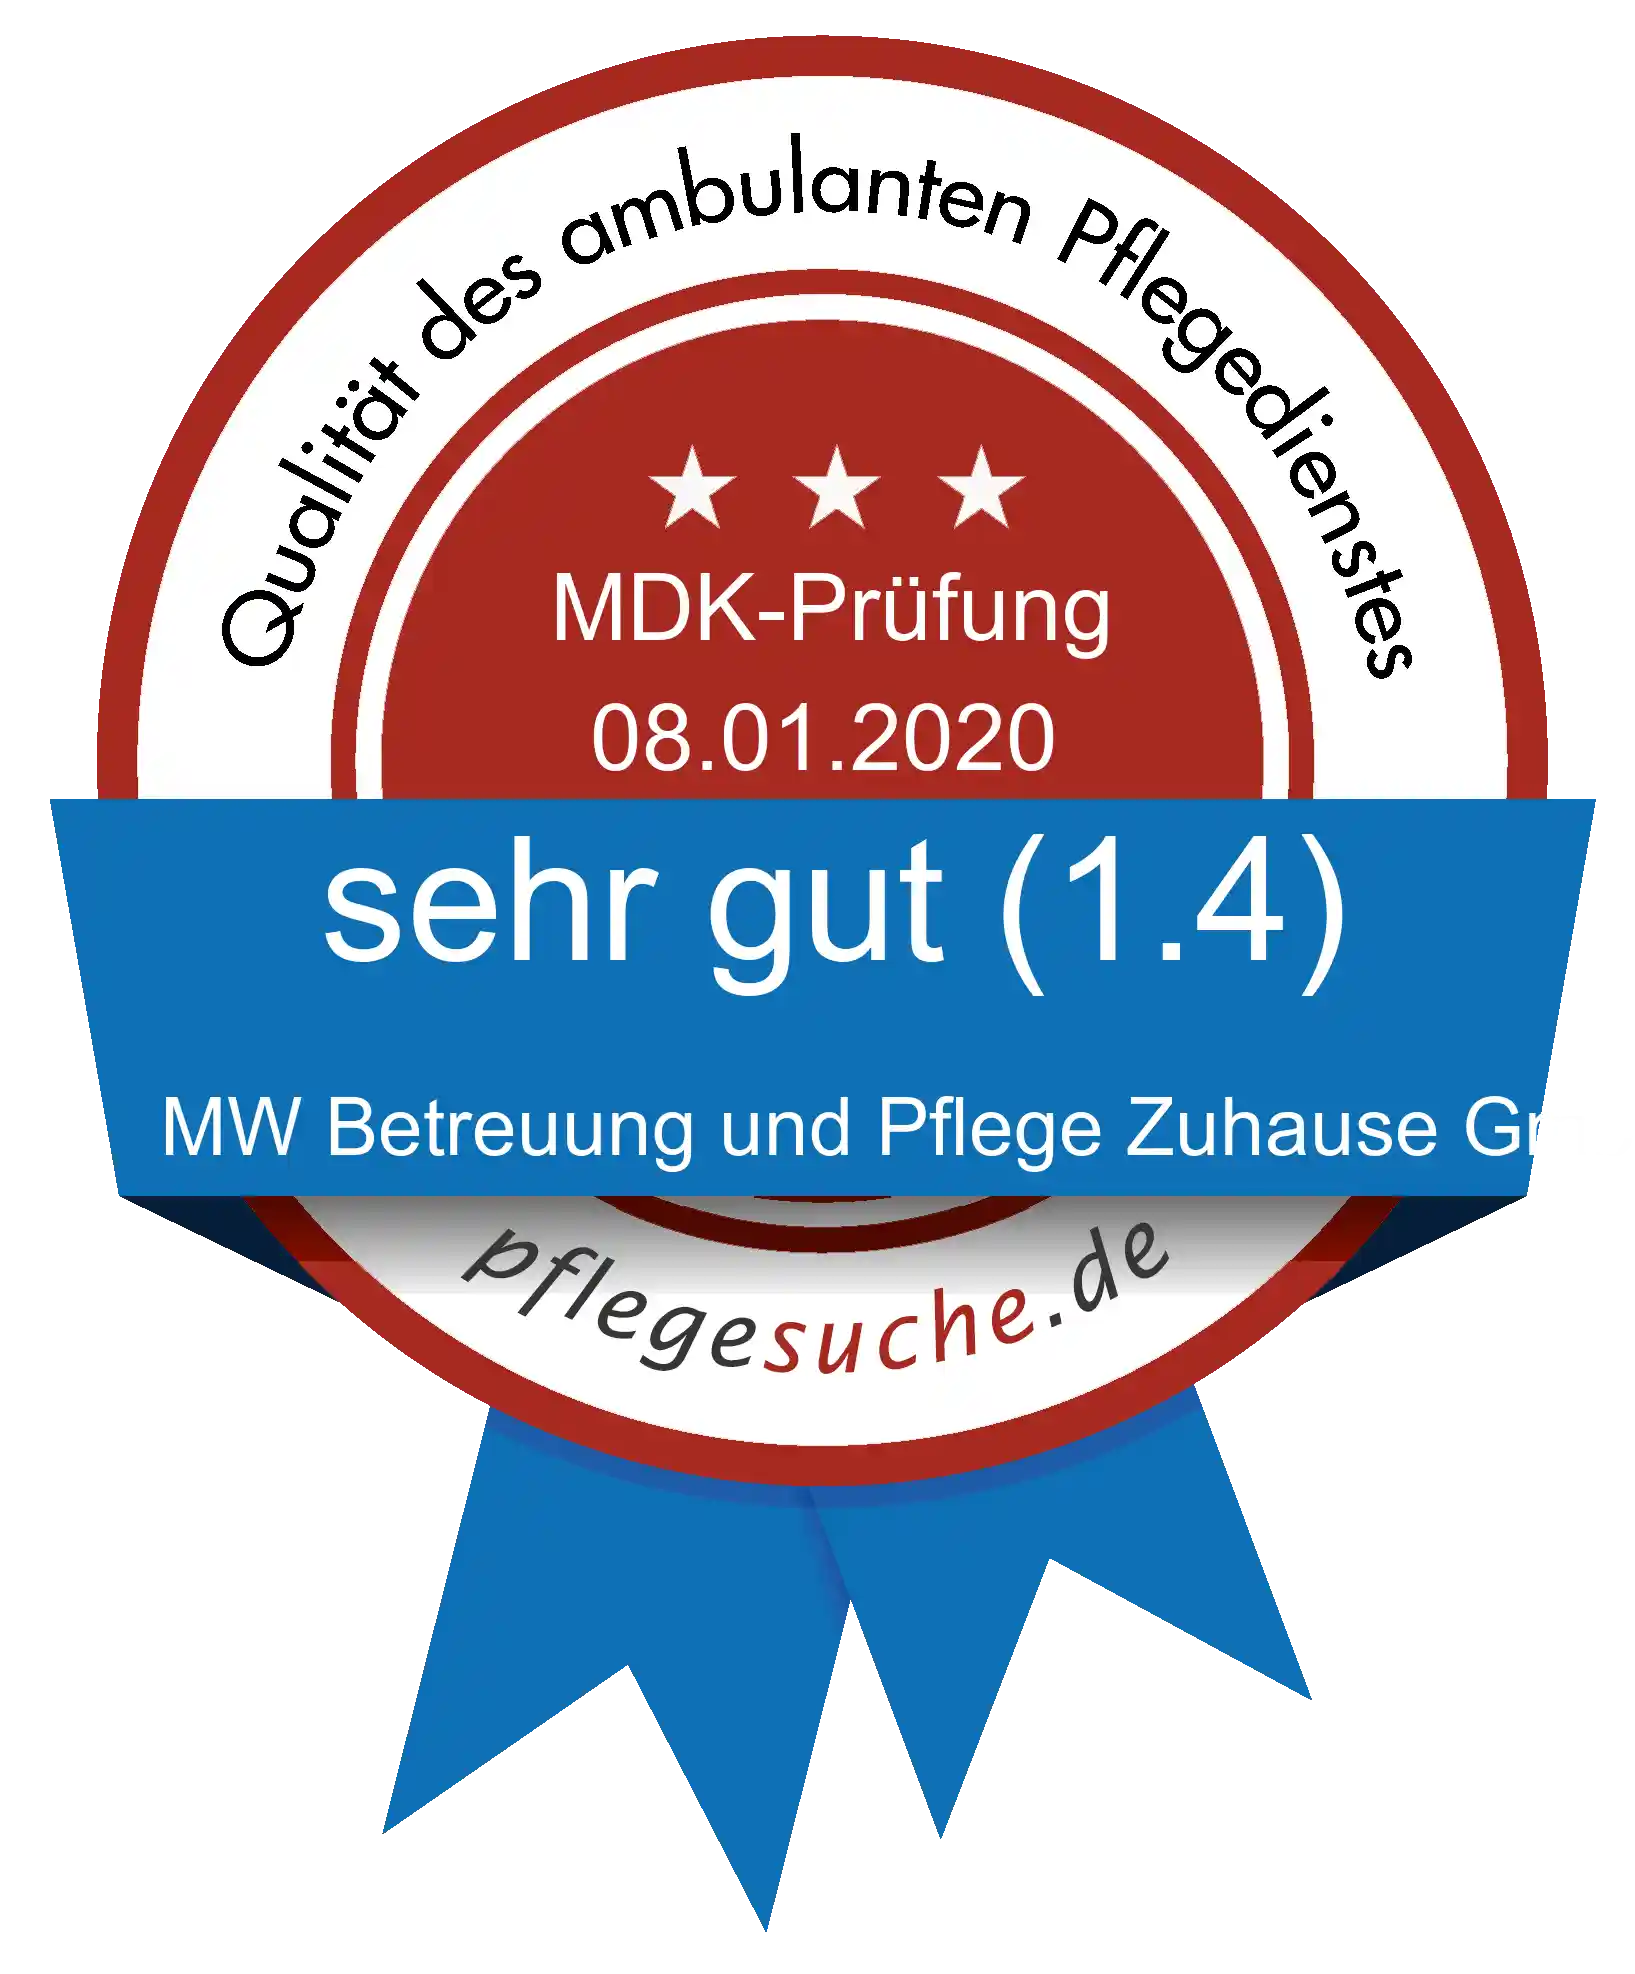 Siegel Benotung: MW Betreuung und Pflege Zuhause GmbH